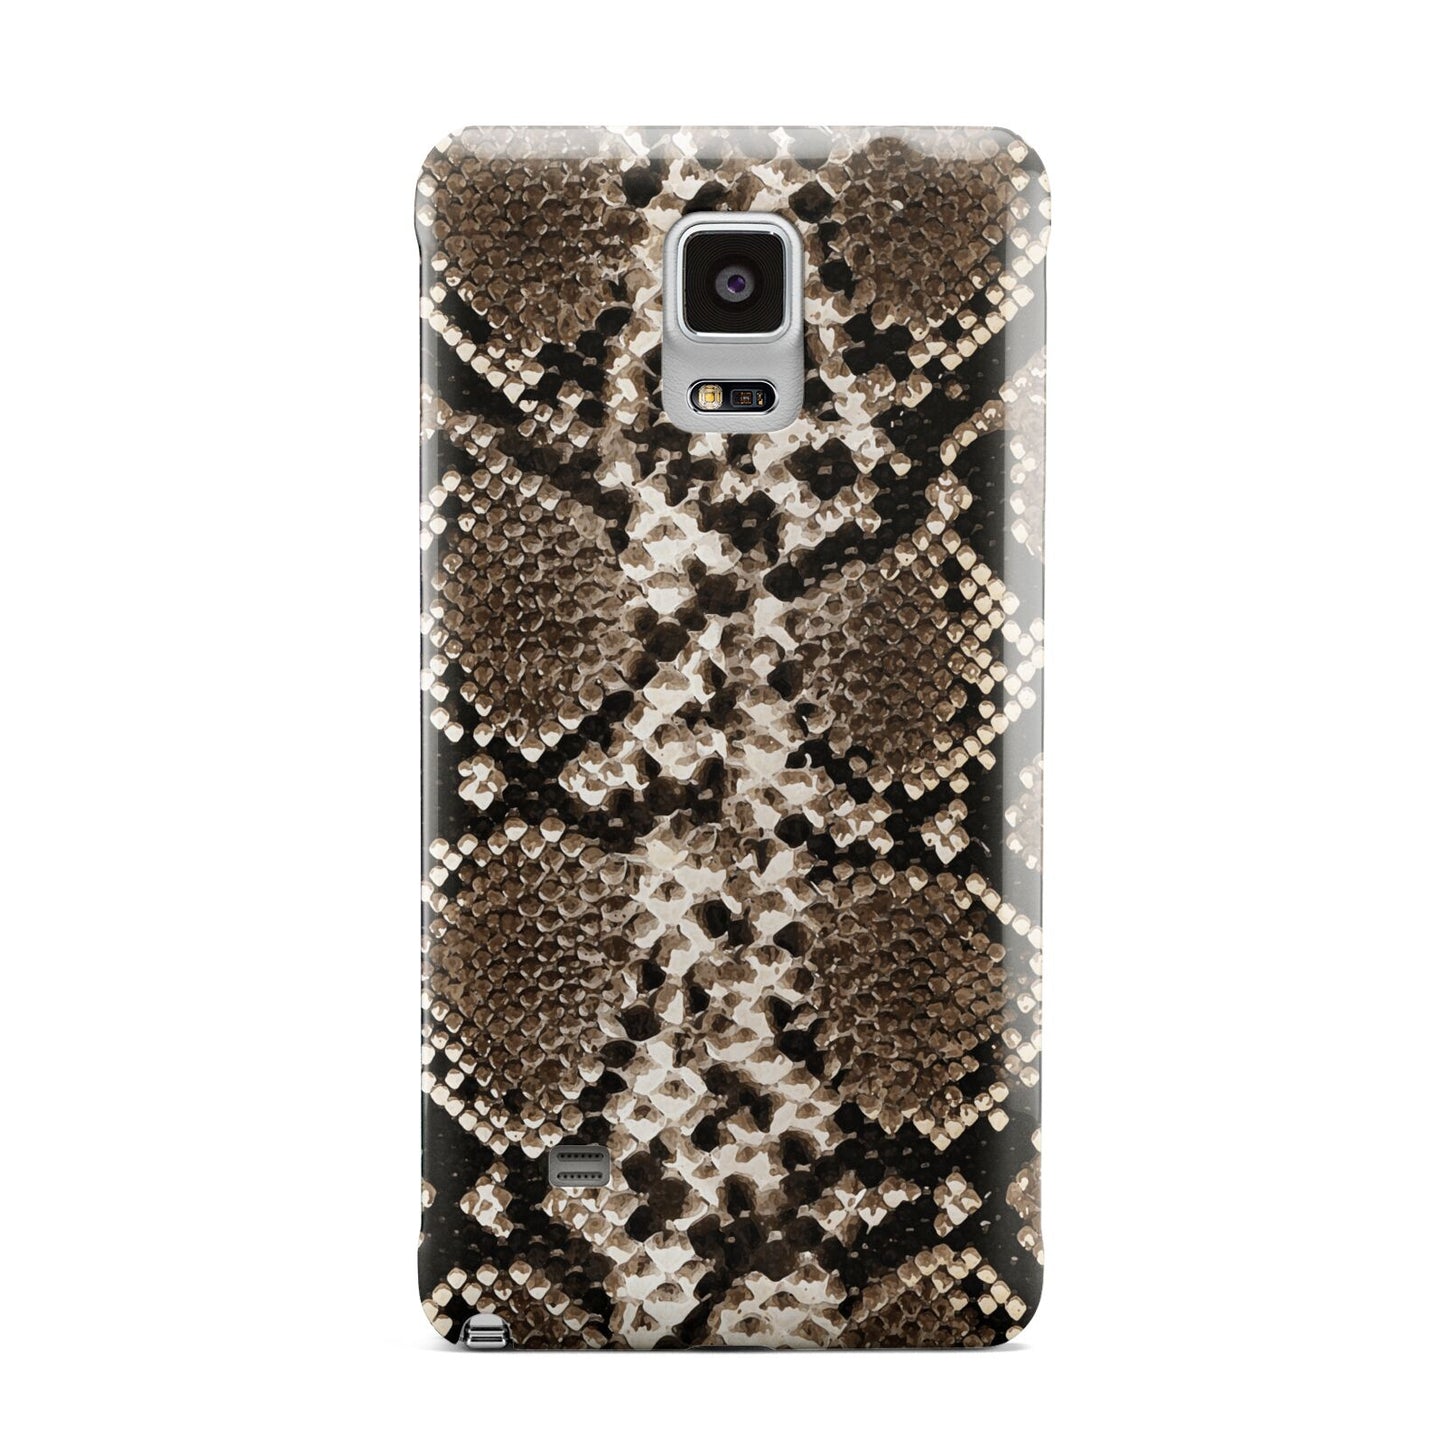 Snakeskin Pattern Samsung Galaxy Note 4 Case